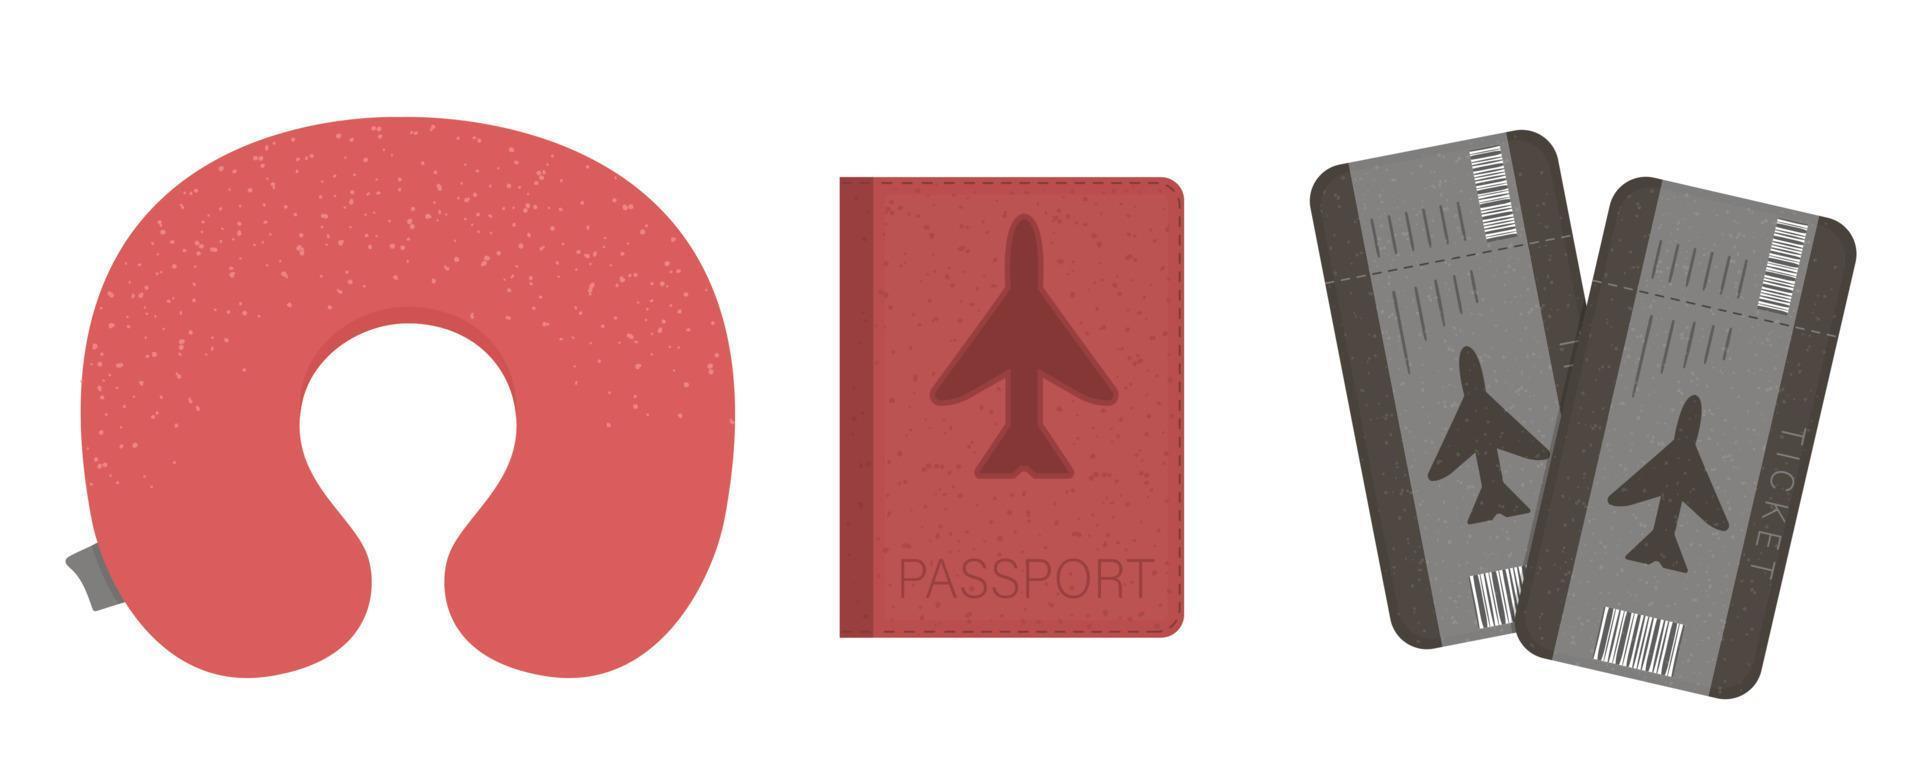 illustrazione vettoriale piatta di cuscino aereo, passaporto, biglietti. icona dell'attrezzatura del viaggiatore di volo. oggetto da viaggio isolato su sfondo bianco. elemento infografica vacanza.